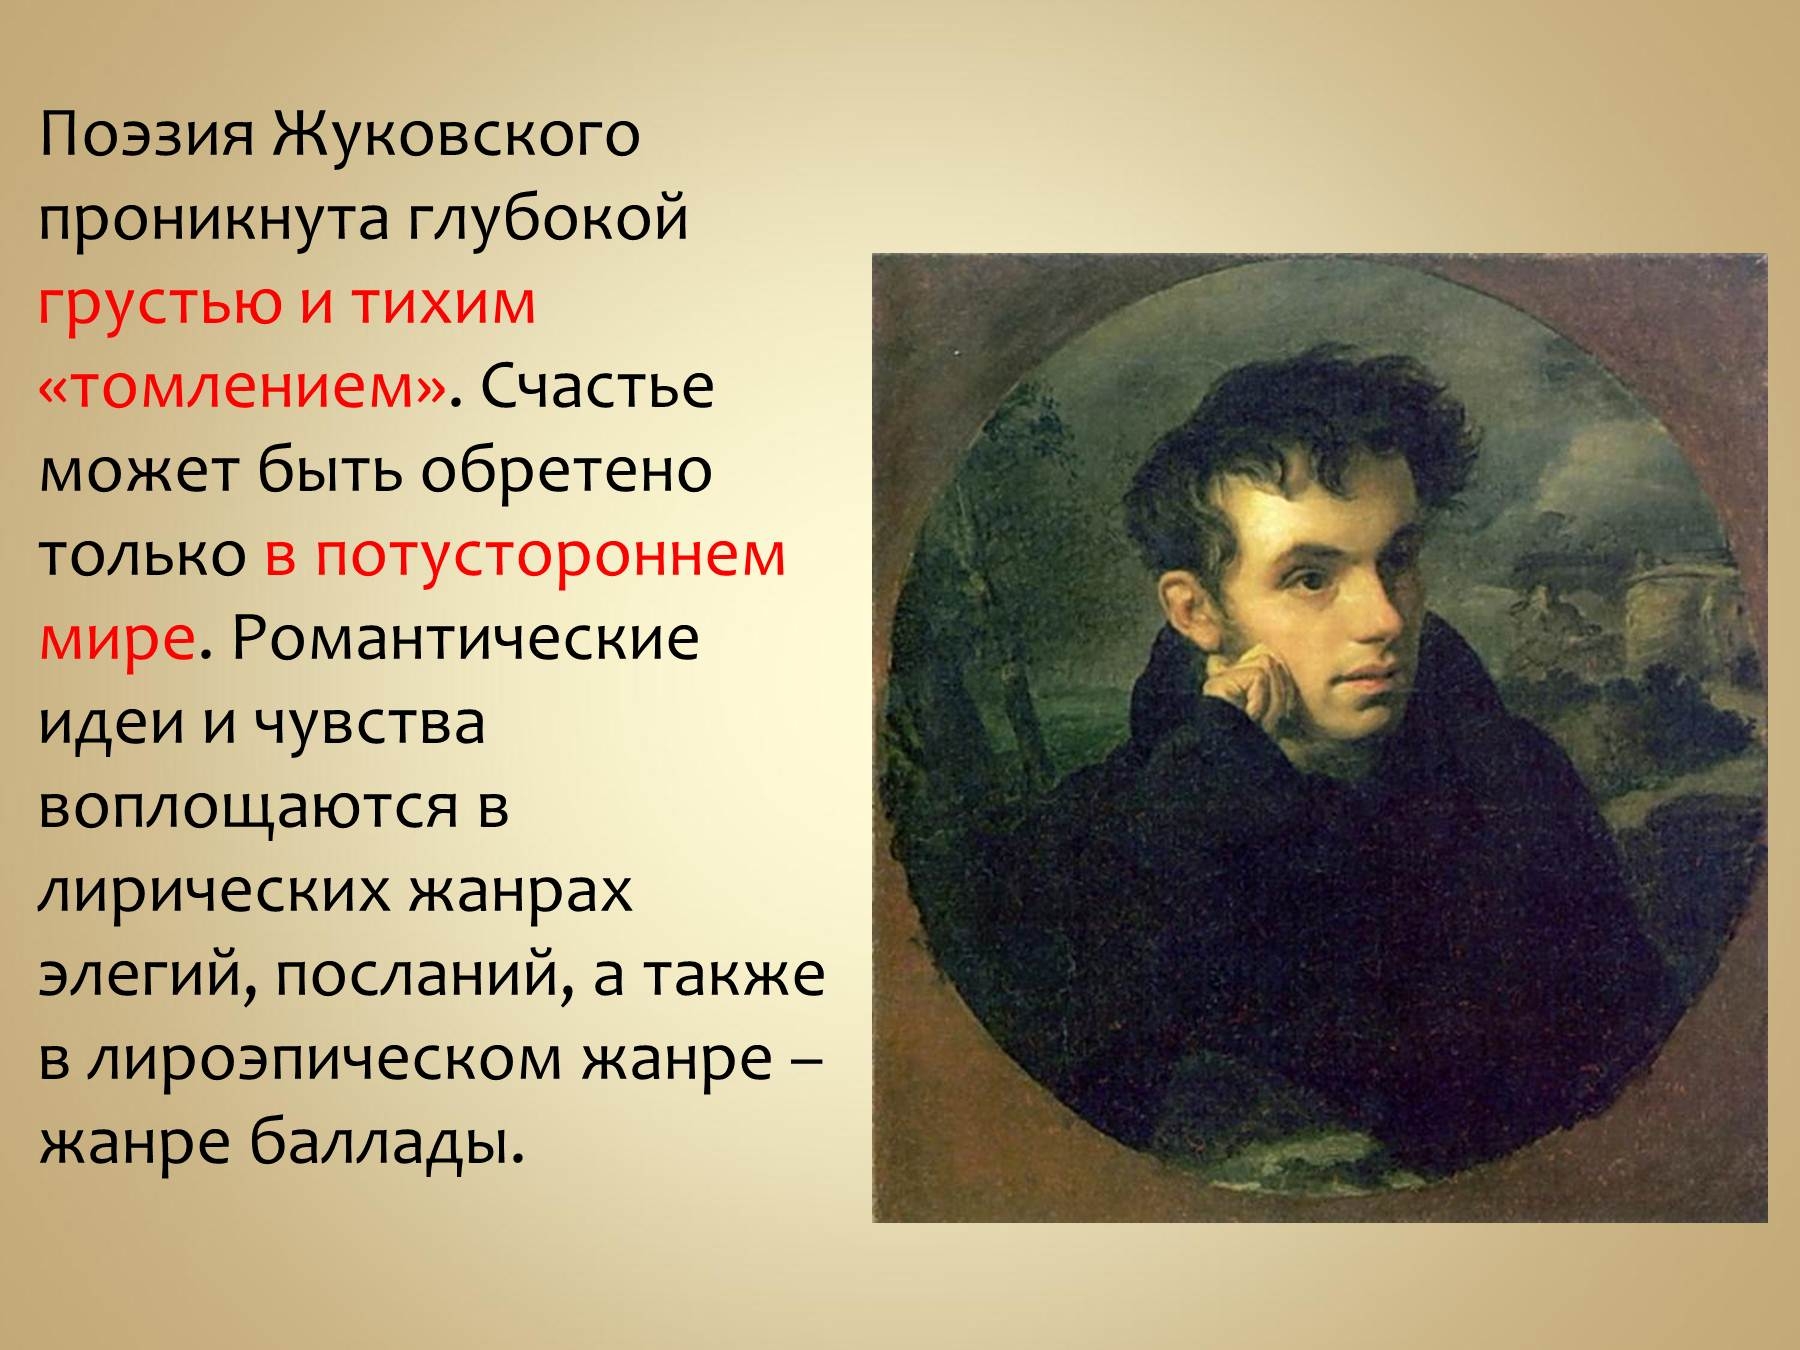 за произведение жуковский прислал пушкину фотографию